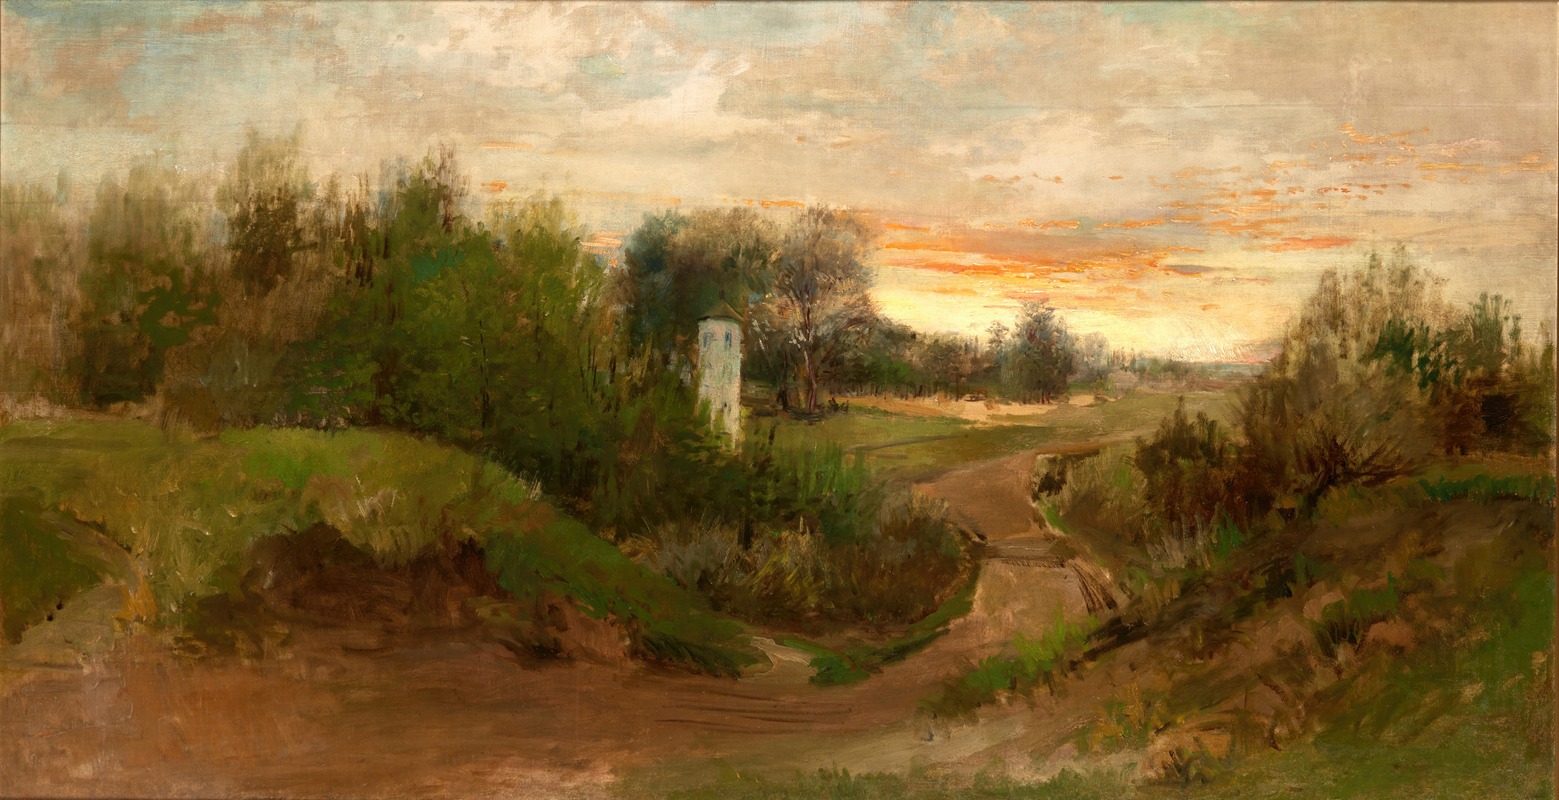 Adam Chmielowski - Landscape from the Vincity of Czarnokozińce